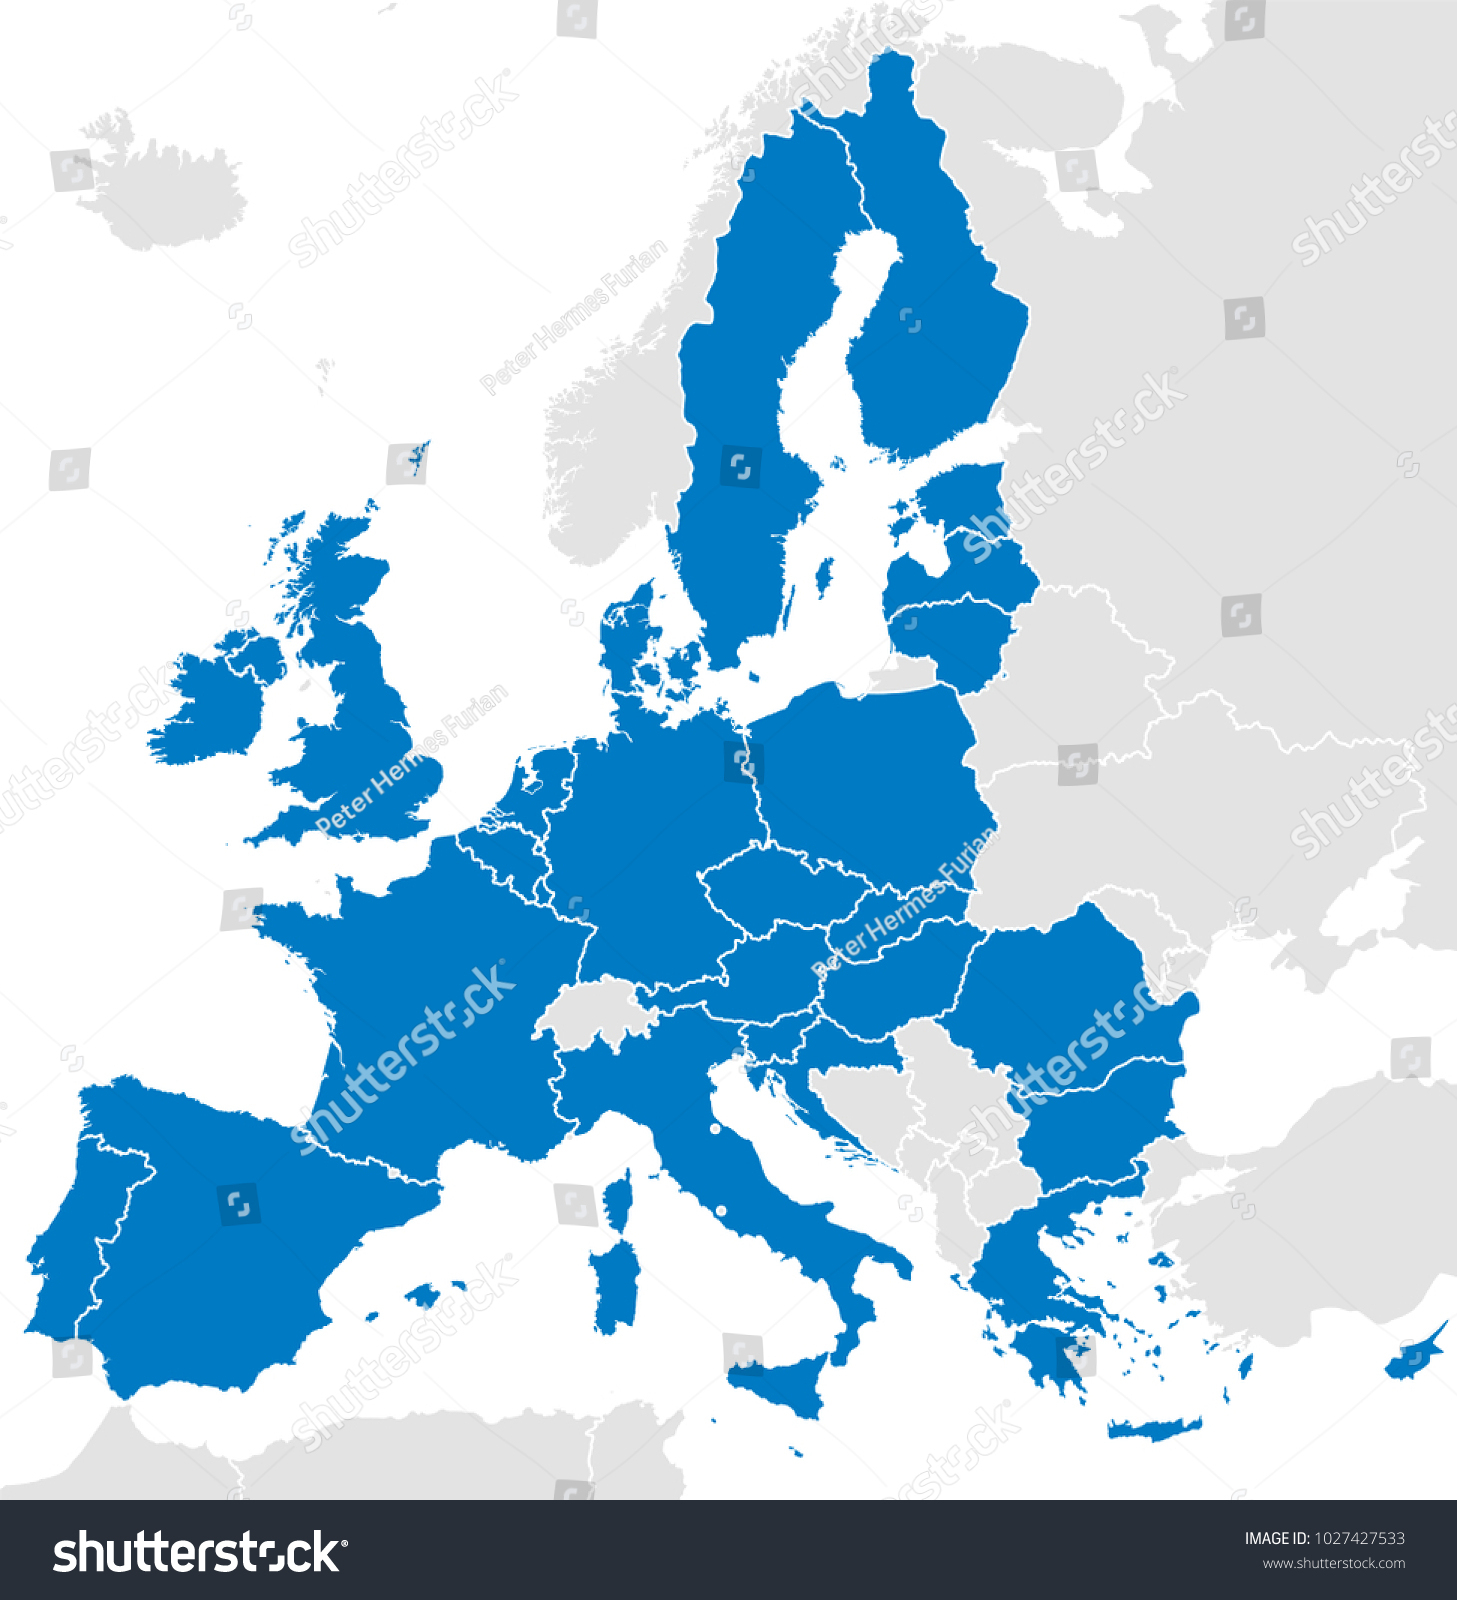 Image Vectorielle De Stock De Les Pays De L'union Européenne intérieur Carte Pays Membre De L Ue